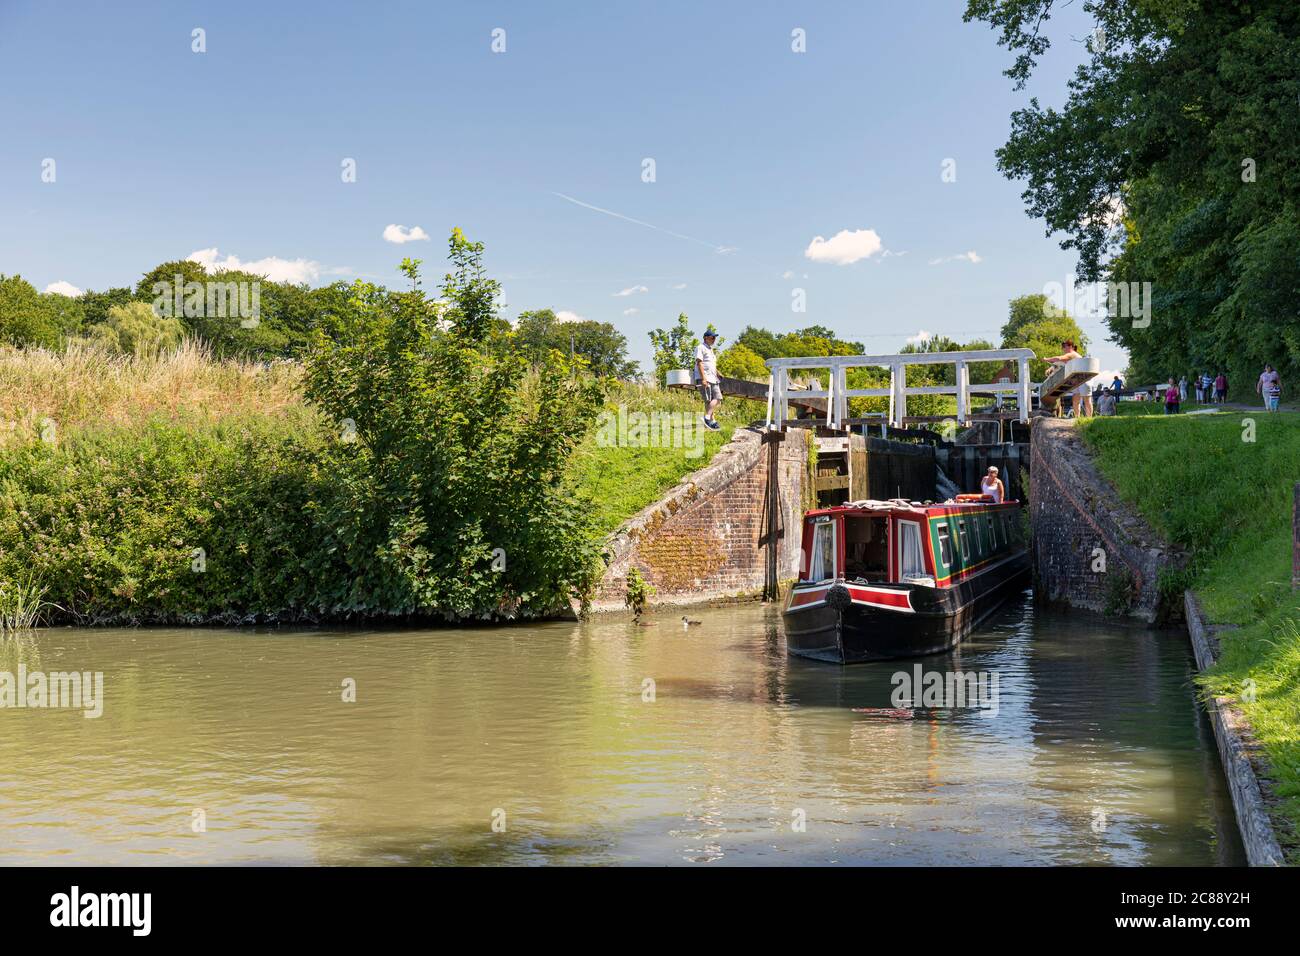 Puertas de cerradura abiertas para permitir que Canal Boat continúe por las esclusas de Caen Hill, Kennet y Avon Canal, Devizes, Wiltshire, Inglaterra, Reino Unido Foto de stock